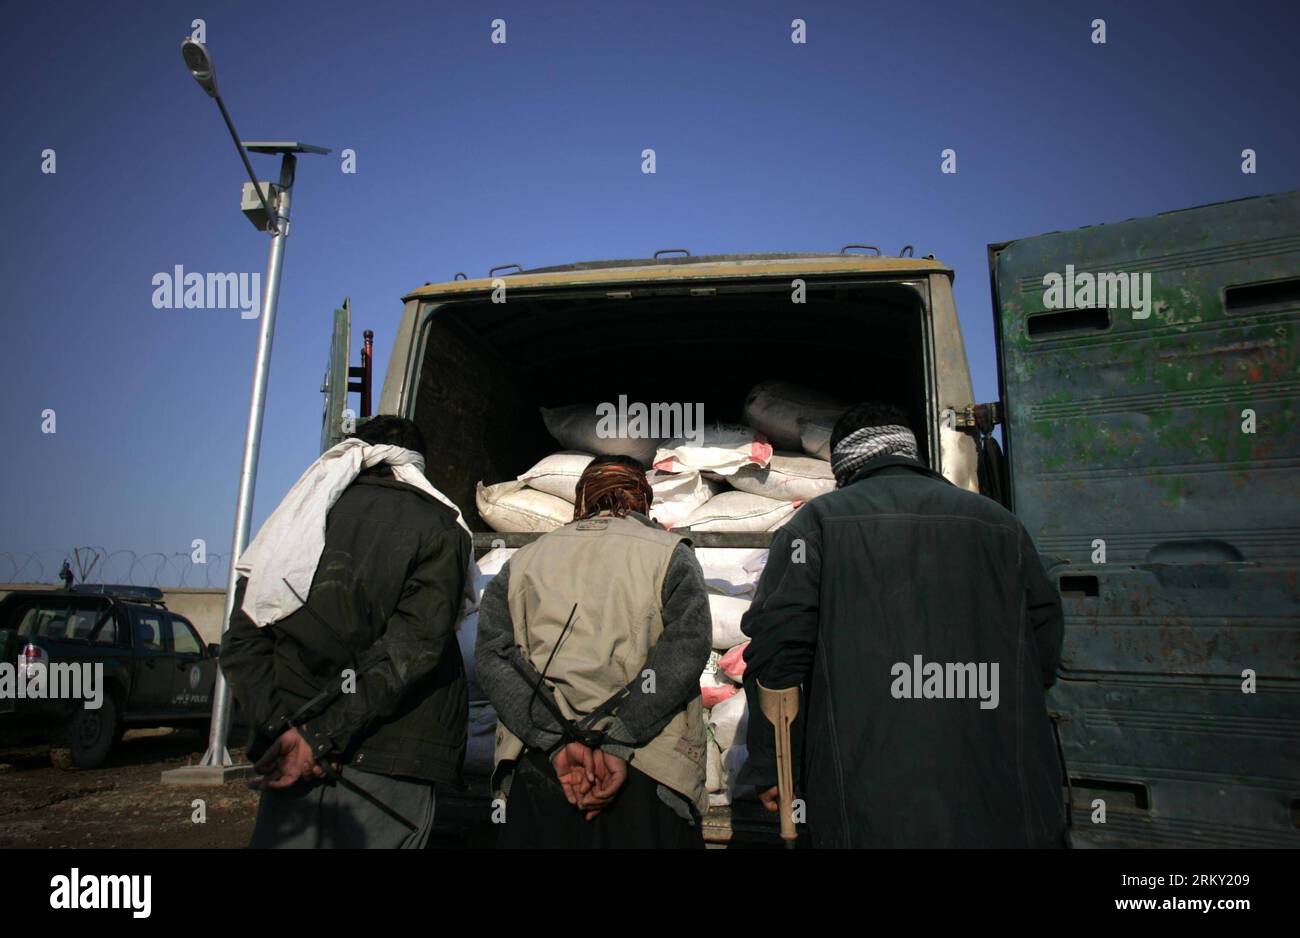 Bildnummer: 59122538 Datum: 23.01.2013 Copyright: imago/Xinhua (130123) - KABUL, 23 gennaio 2013 (Xinhua) - sospetti terroristi si trovano accanto a un autobus carico di esplosivi dopo essere stati catturati dalle forze di sicurezza a Kabul, Afghanistan, 23 gennaio 2013. Le forze di sicurezza hanno scoperto un autobus carico di esplosivi nella capitale afghana Kabul e hanno quindi sventato un possibile attacco terroristico nella città devastata dalla guerra mercoledì. (Xinhua/Ahmad Massoud) (zf) AFGHANISTAN-KABUL-EXPLOSIVE OBJECT PUBLICATIONxNOTxINxCHN Gesellschaft Politik Terror Terroristen Verhaftung Sprengstoff Sprengstofffund x0x xdd premiumd 2013 quer 59122538 Data 23 Foto Stock